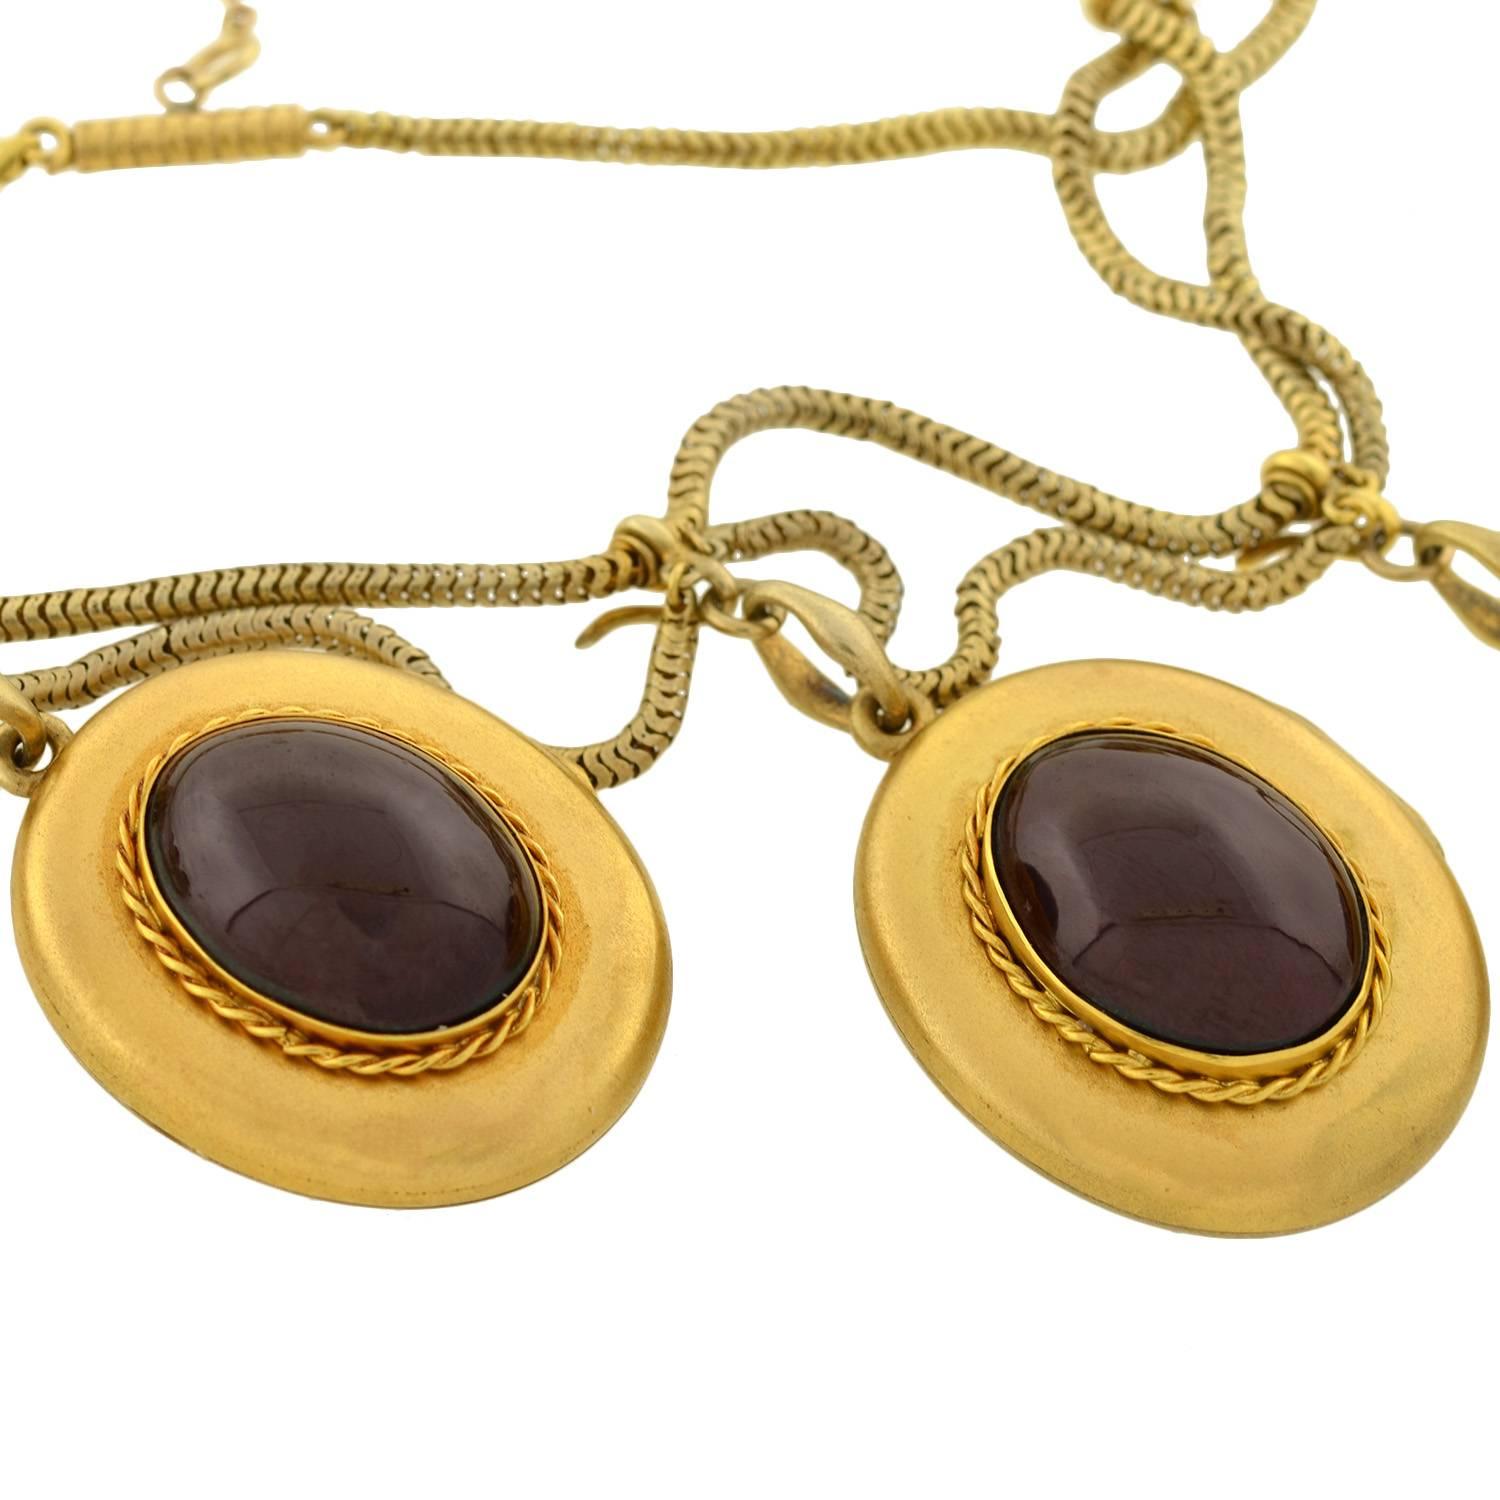 Women's J.W. Benson Early Victorian Garnet Gold Locket Festoon Necklace